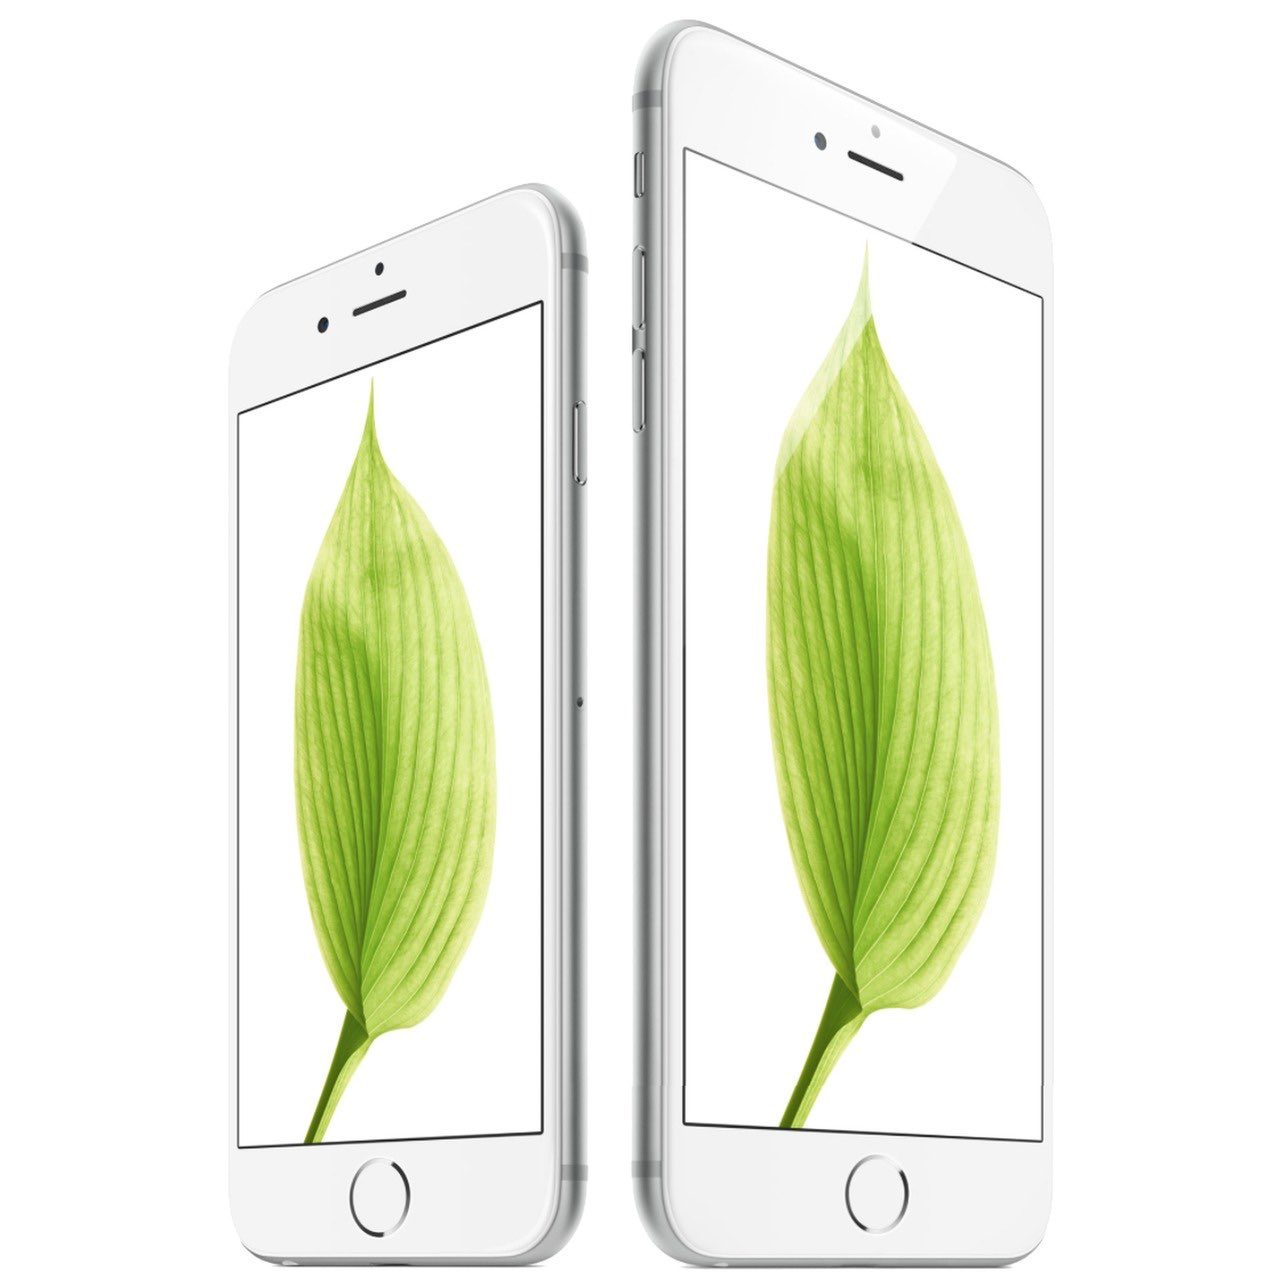 iPhone 6s kopen abonnement: vergelijk 6s Plus